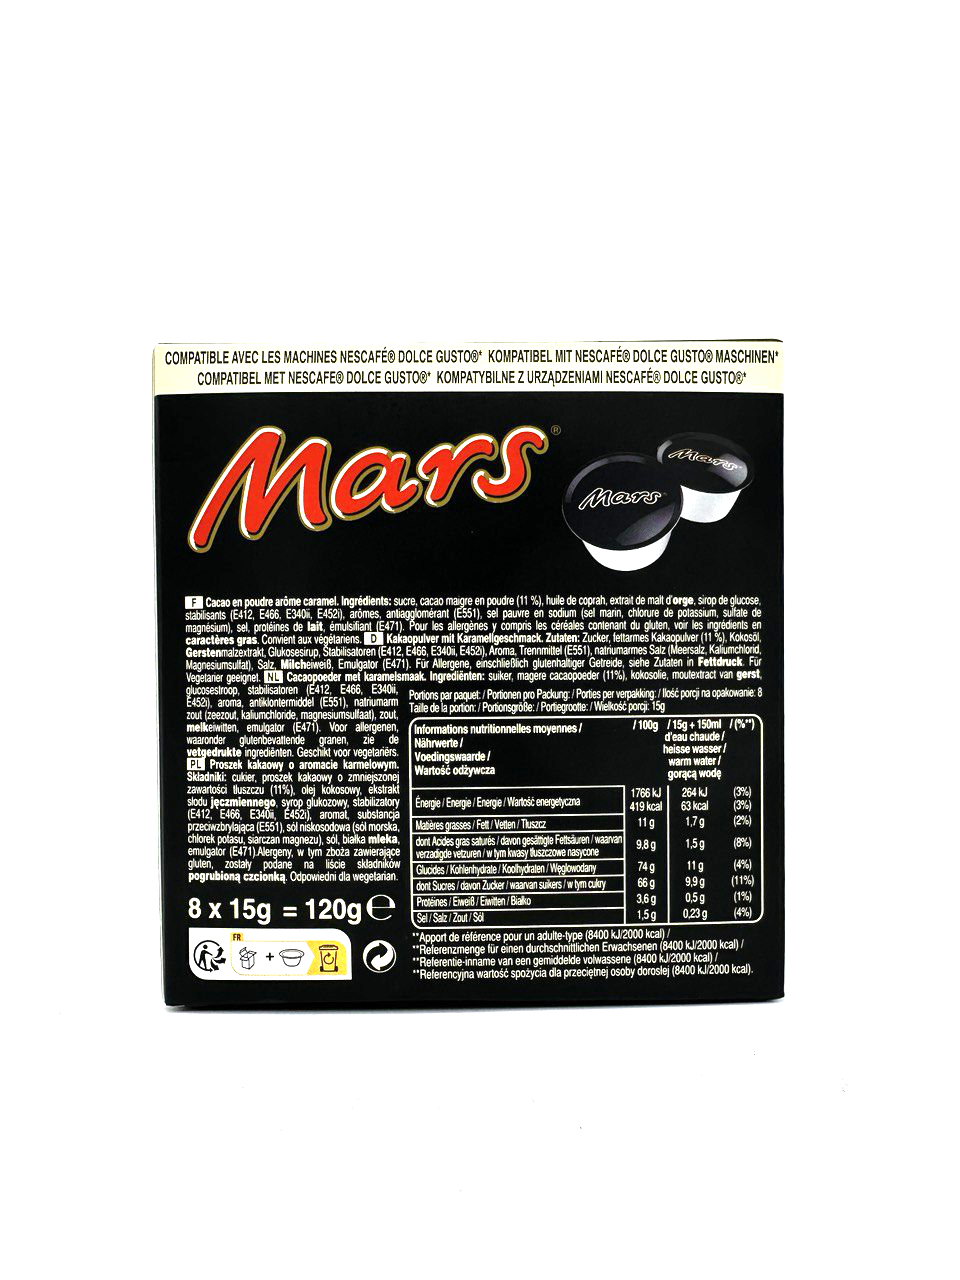 Mars Hot Chocolate Pods (UK)